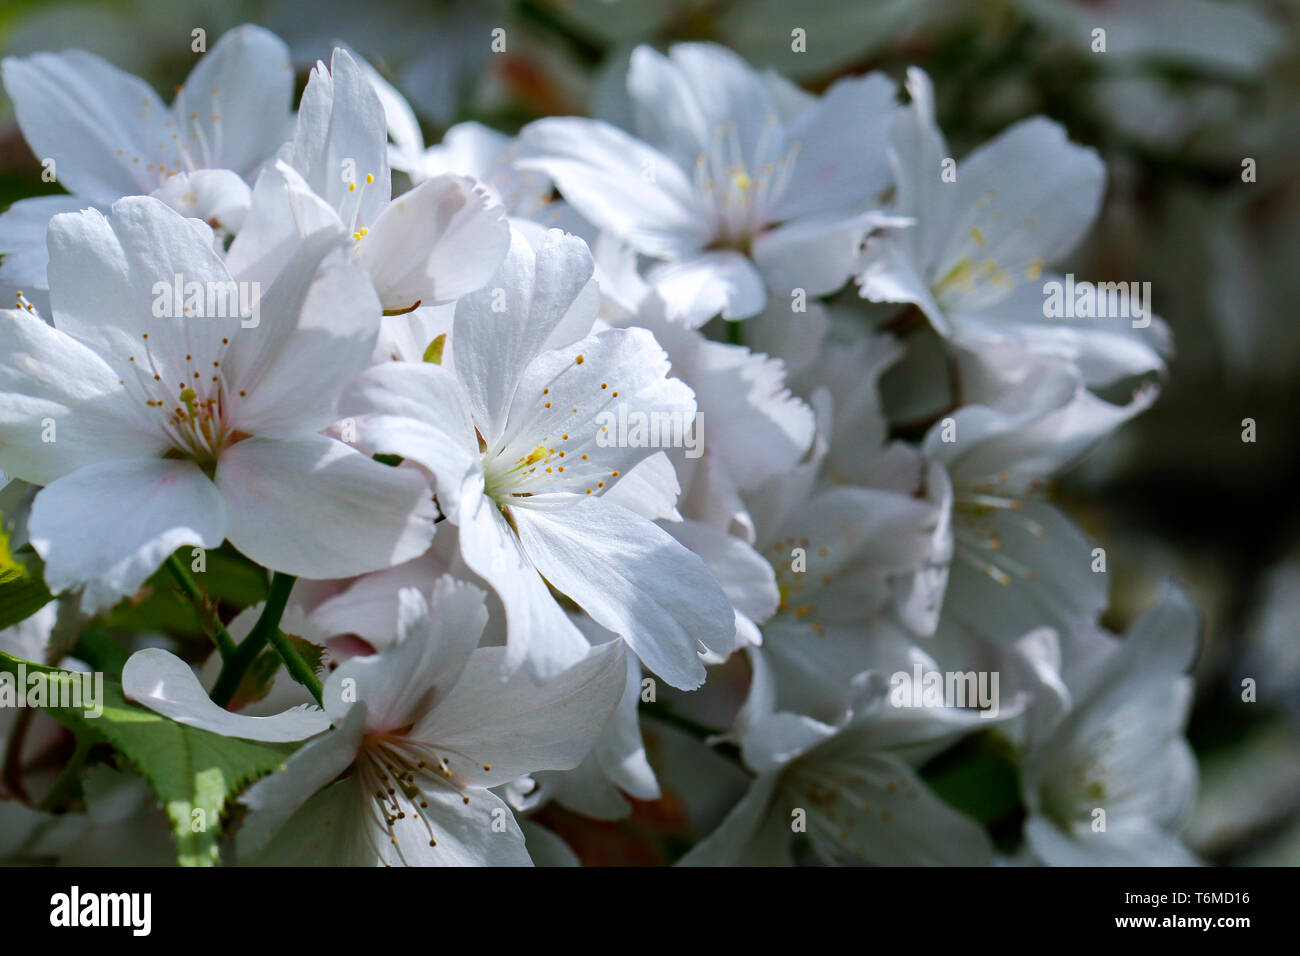 Close up of white flowers of Prunus x yedoensis Moerheimii (Flowering cherry tree) Stock Photo